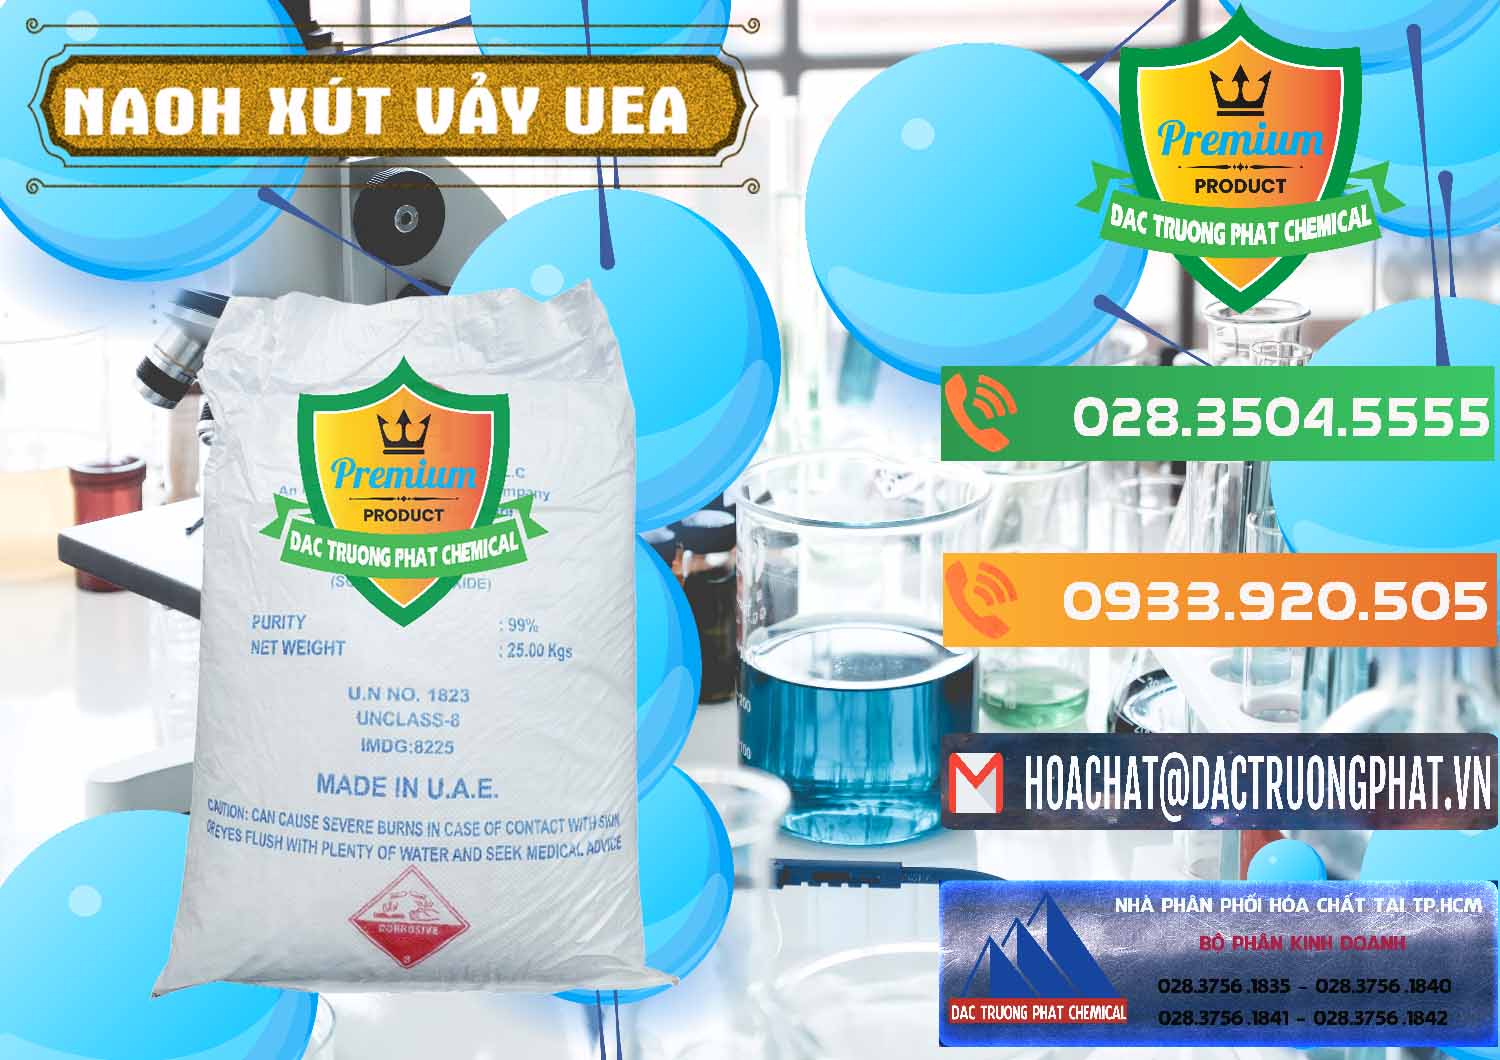 Nơi chuyên bán - cung cấp Xút Vảy - NaOH Vảy UAE Iran - 0432 - Công ty chuyên nhập khẩu & phân phối hóa chất tại TP.HCM - hoachatxulynuoc.com.vn